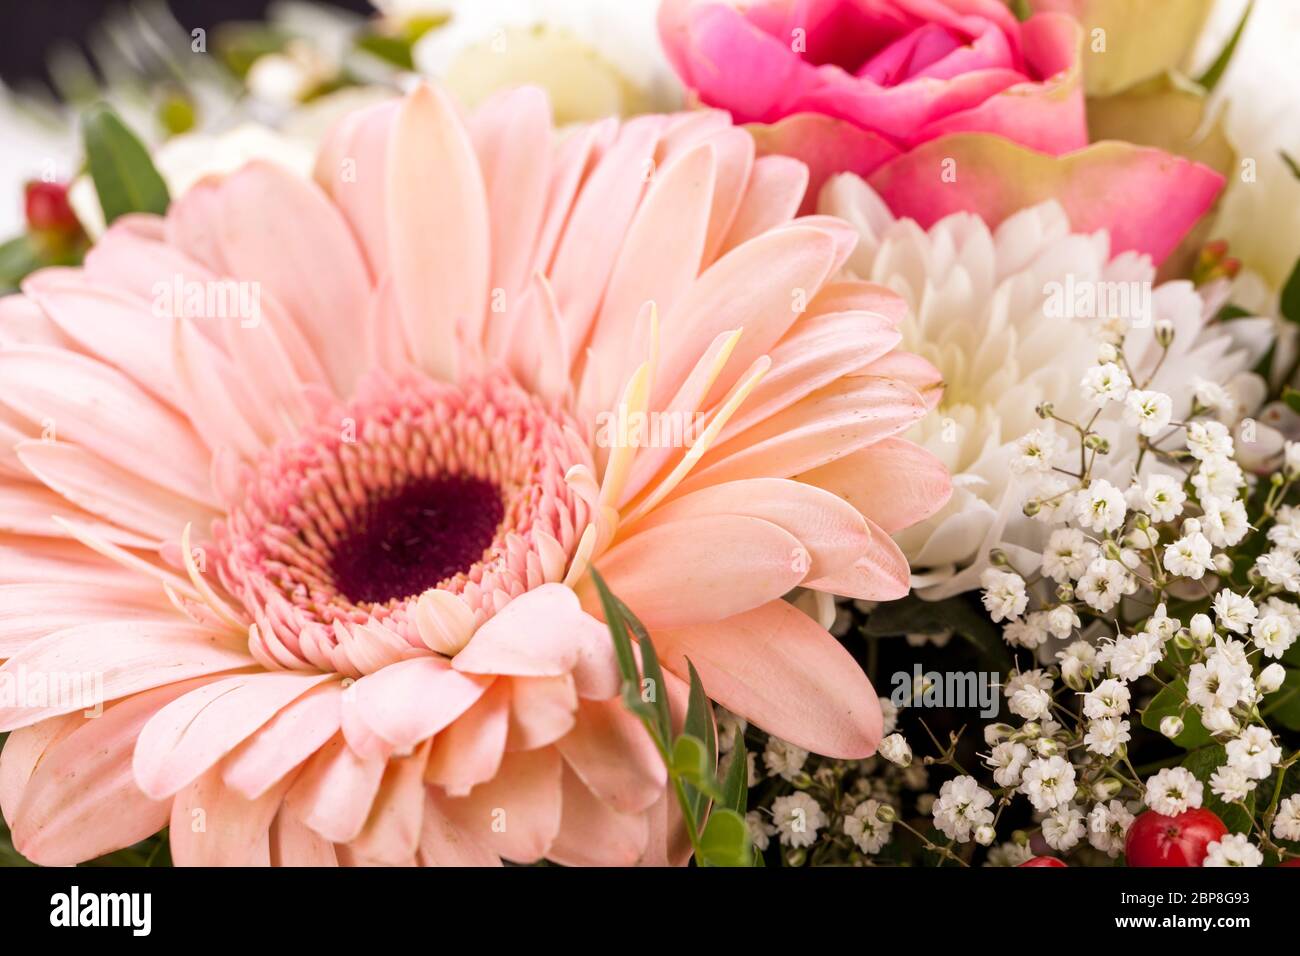 frische schöne schnittblumen strauss in rosa weiss gerbera rosen grün festlich dekoration Stock Photo